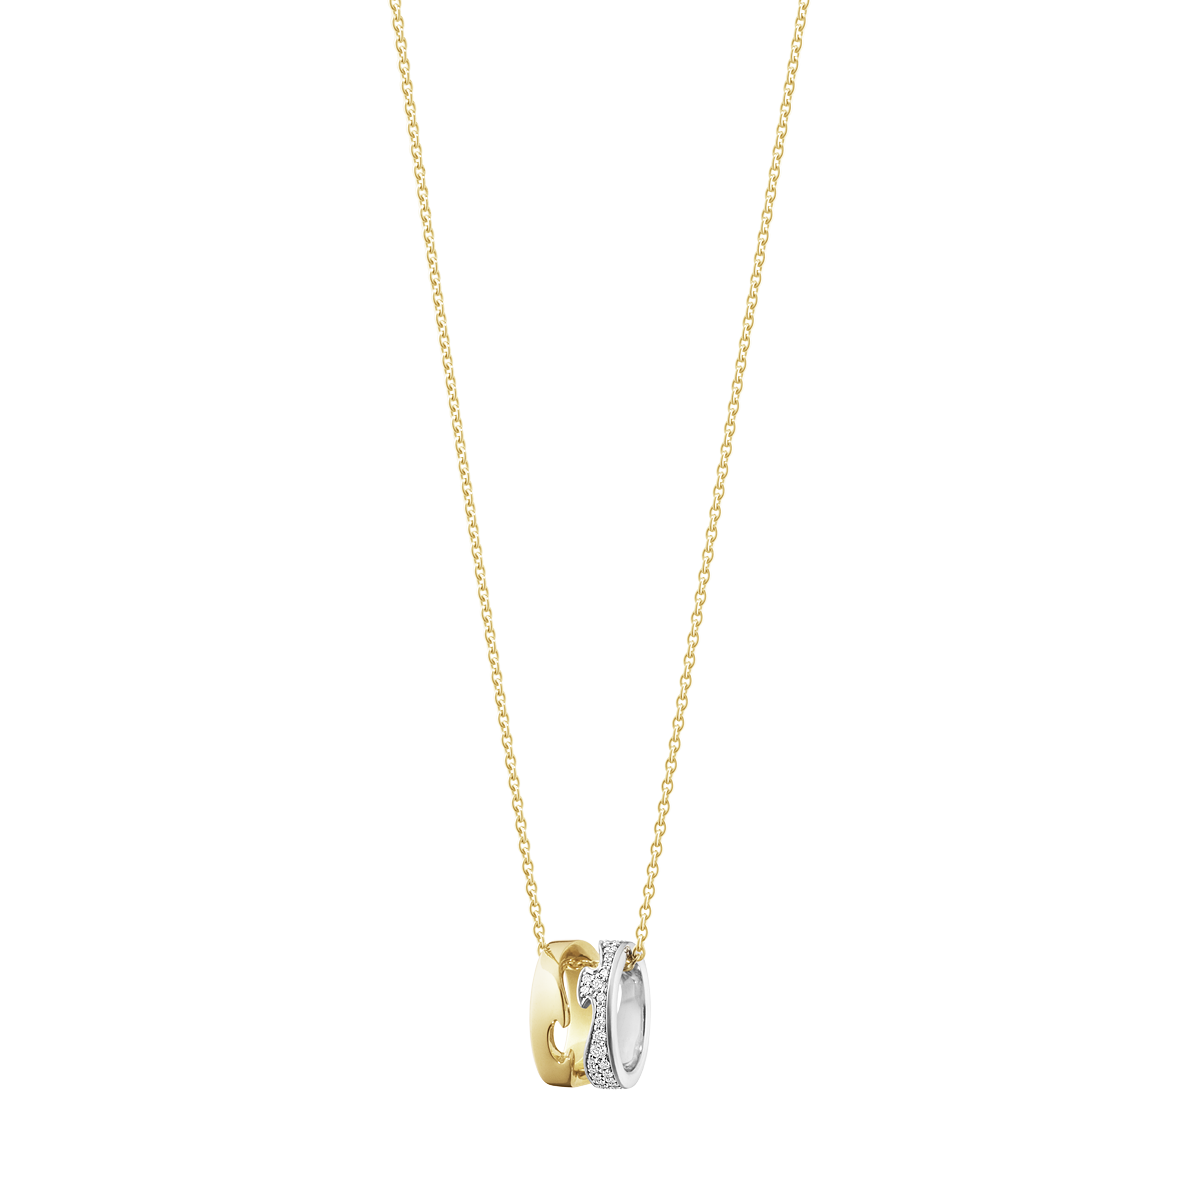 Fusion halskæde med vedhæng, diamanter - hvidguld, guld fra Georg Jensen